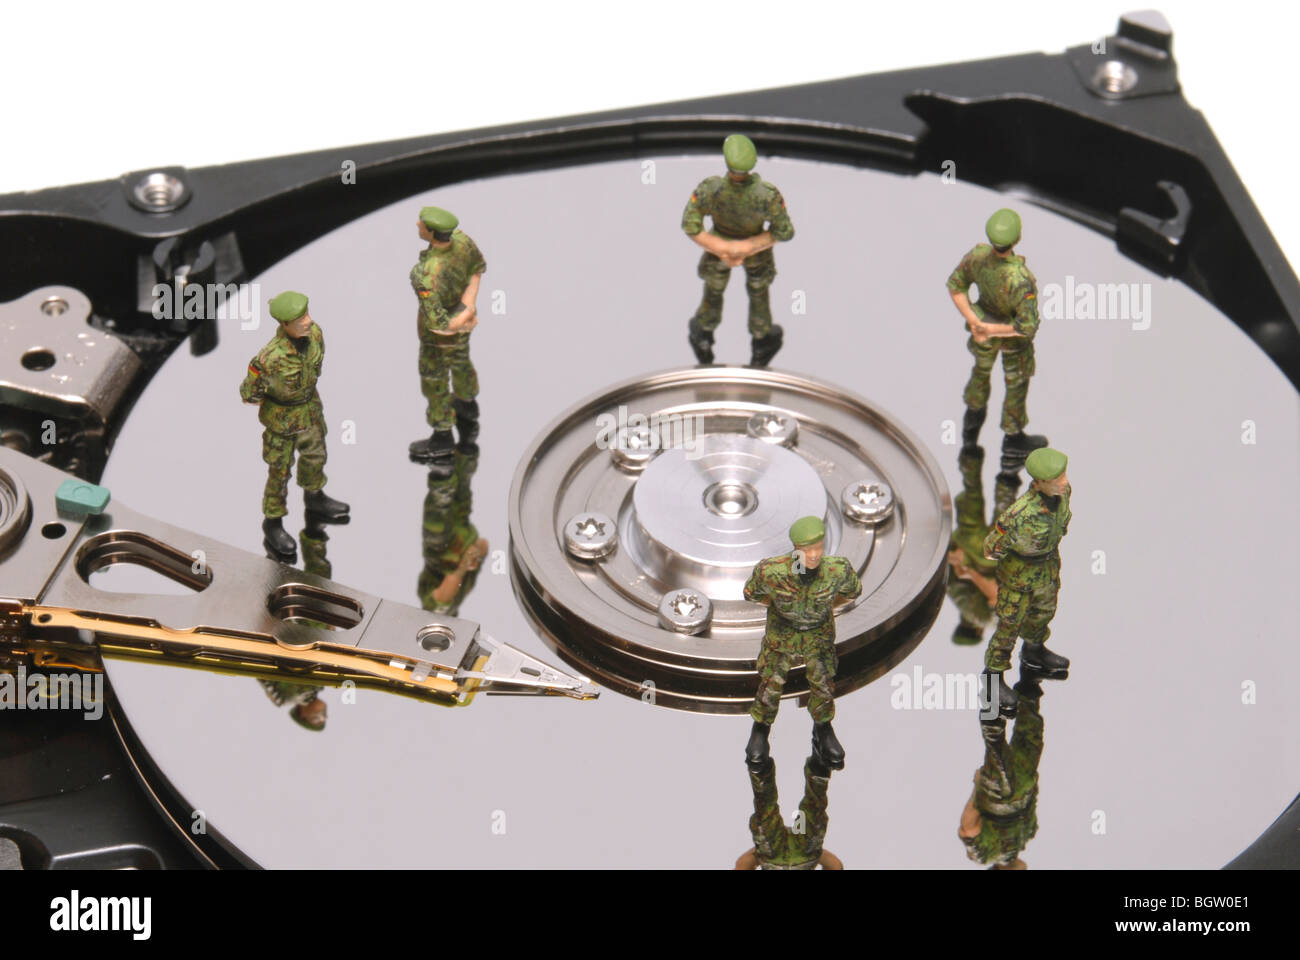 Unità disco rigido con la polizia in miniatura figure, immagine simbolica per la protezione dei dati Foto Stock